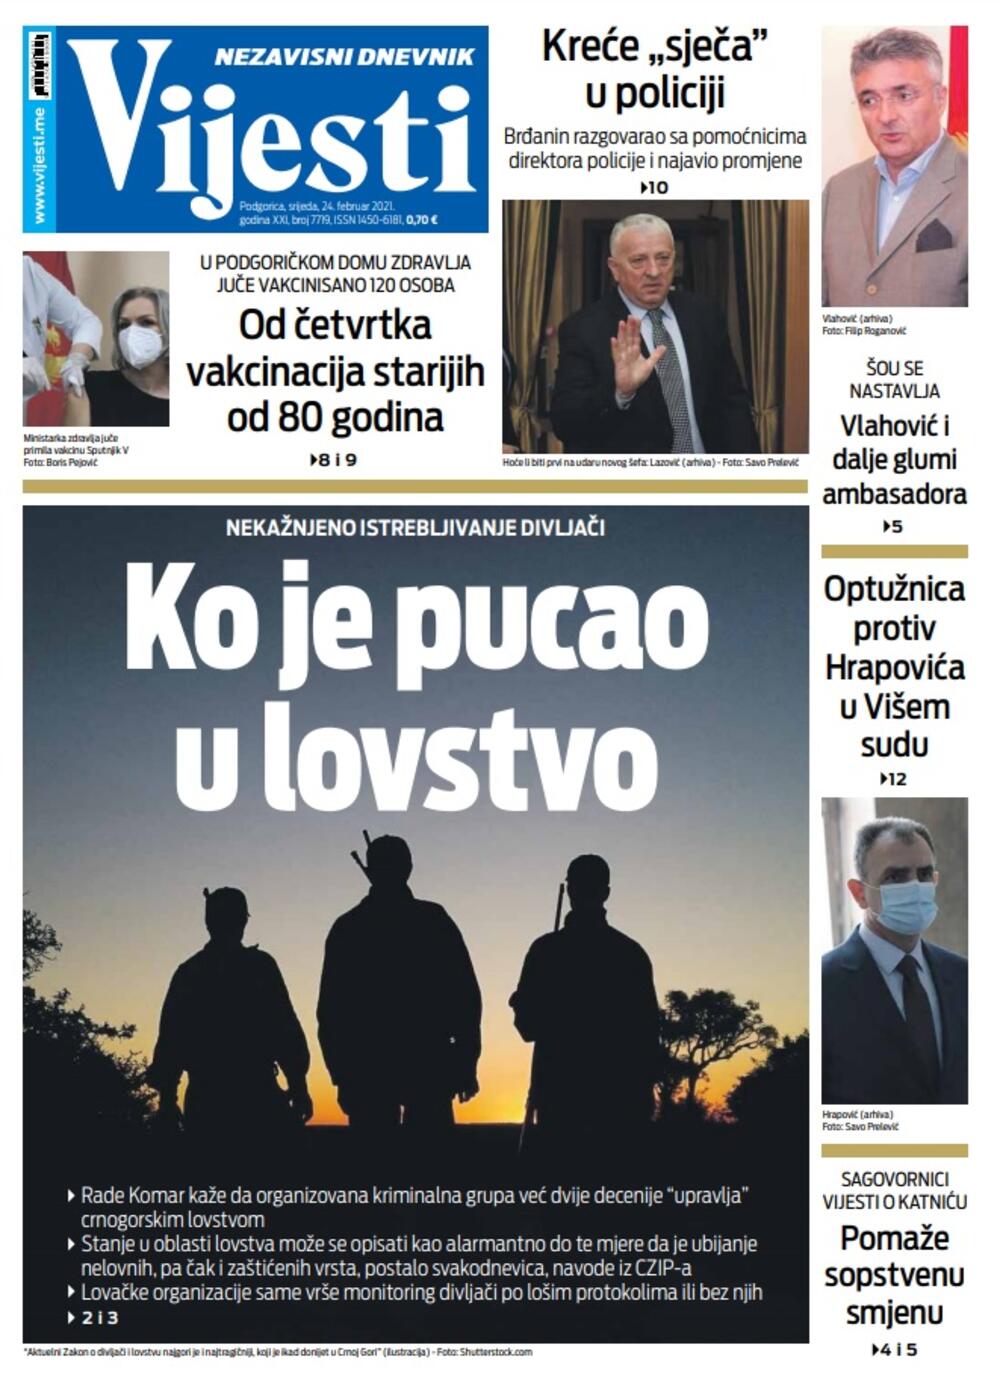 Naslovna strana "Vijesti" za srijedu 24. februar 2021. godine, Foto: Vijesti